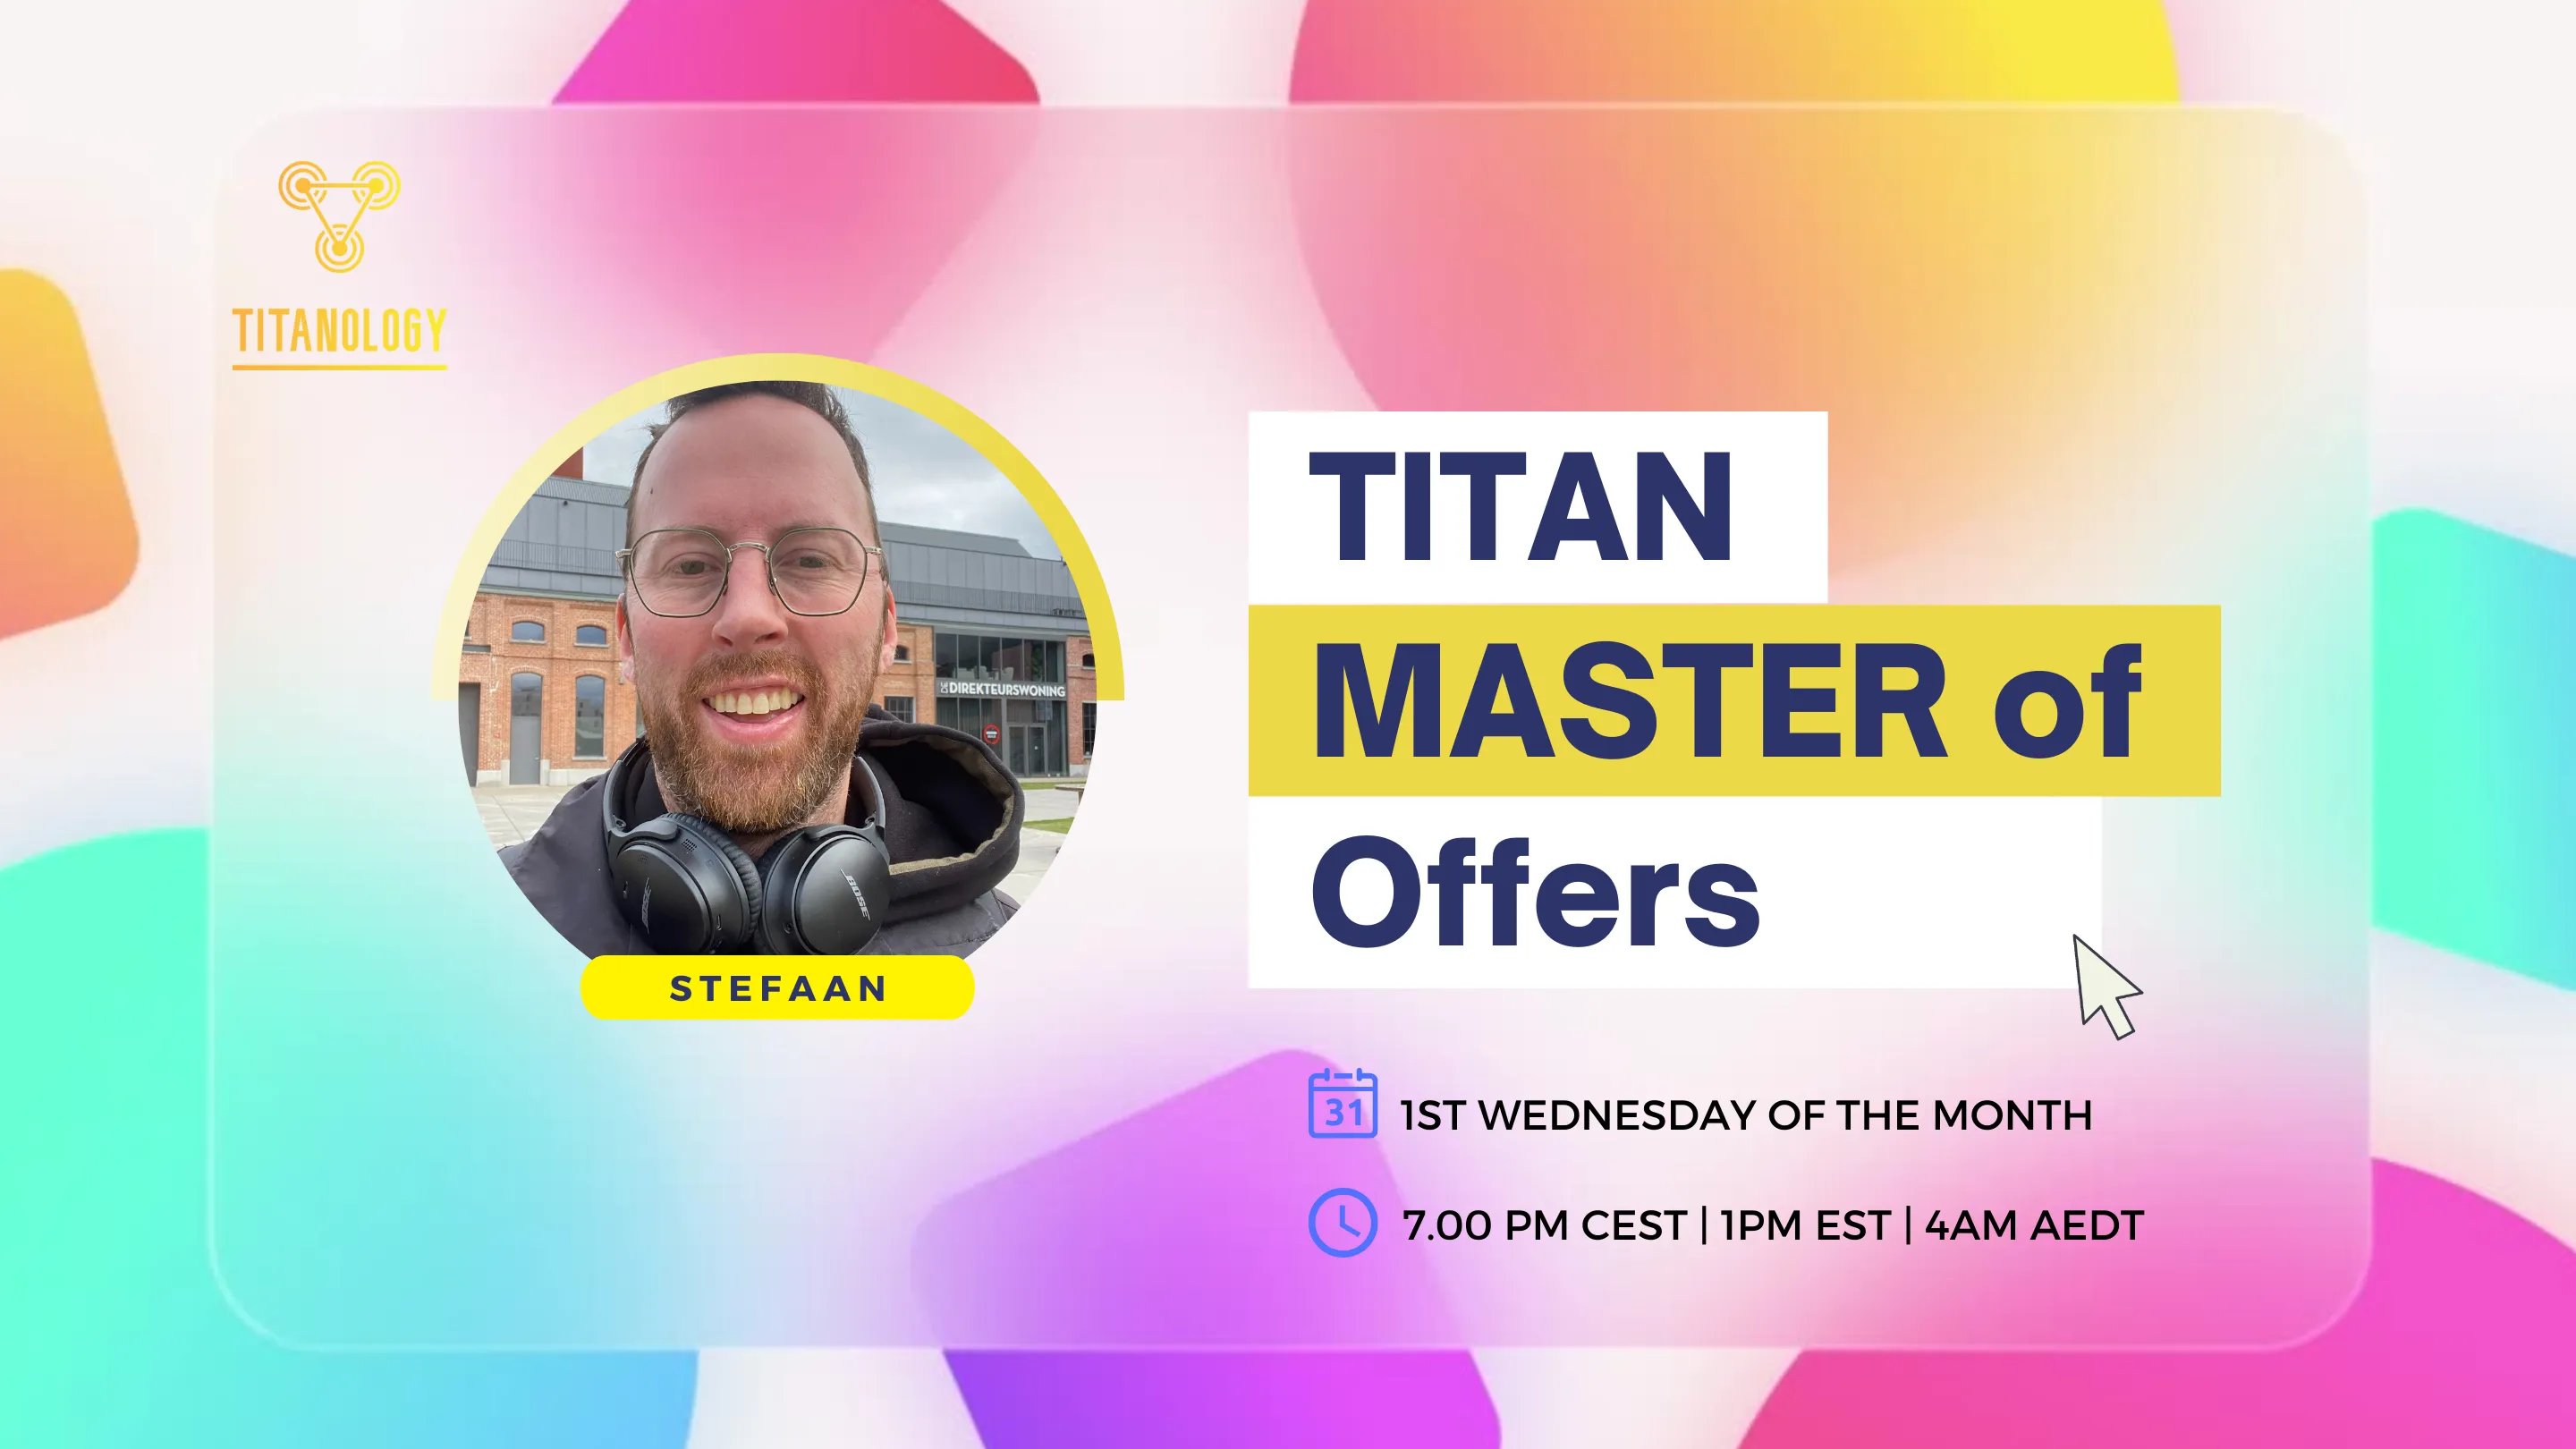 Titan Master of Offers - Stefaan De Vreese